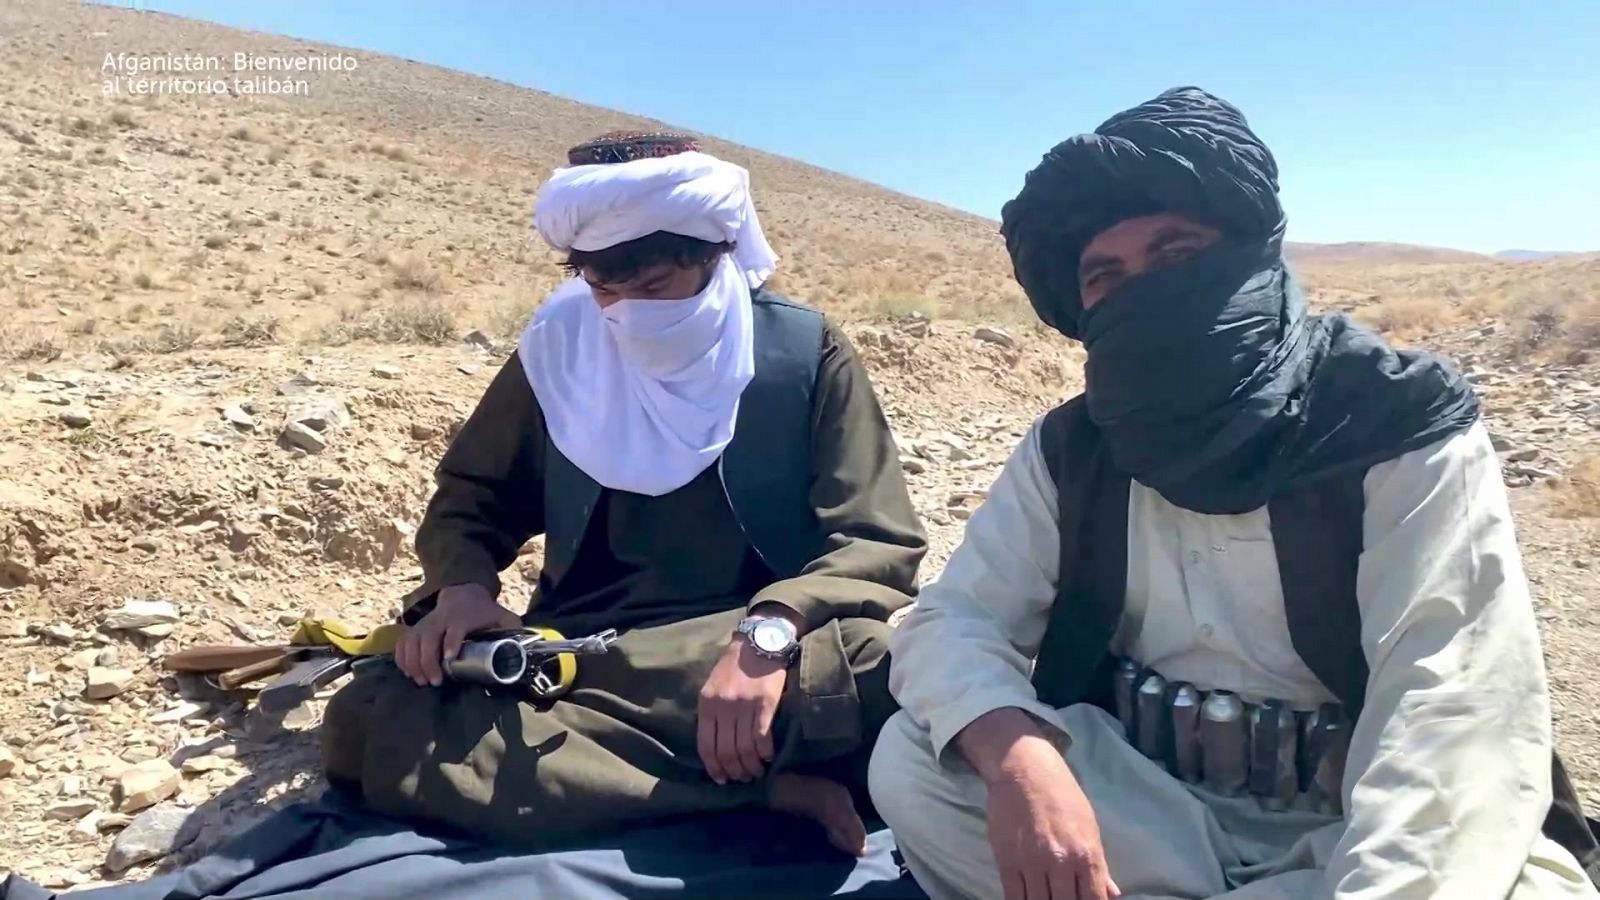 Somos documentales - Afganistán: bienvenido al territorio talibán - Documental en RTVE